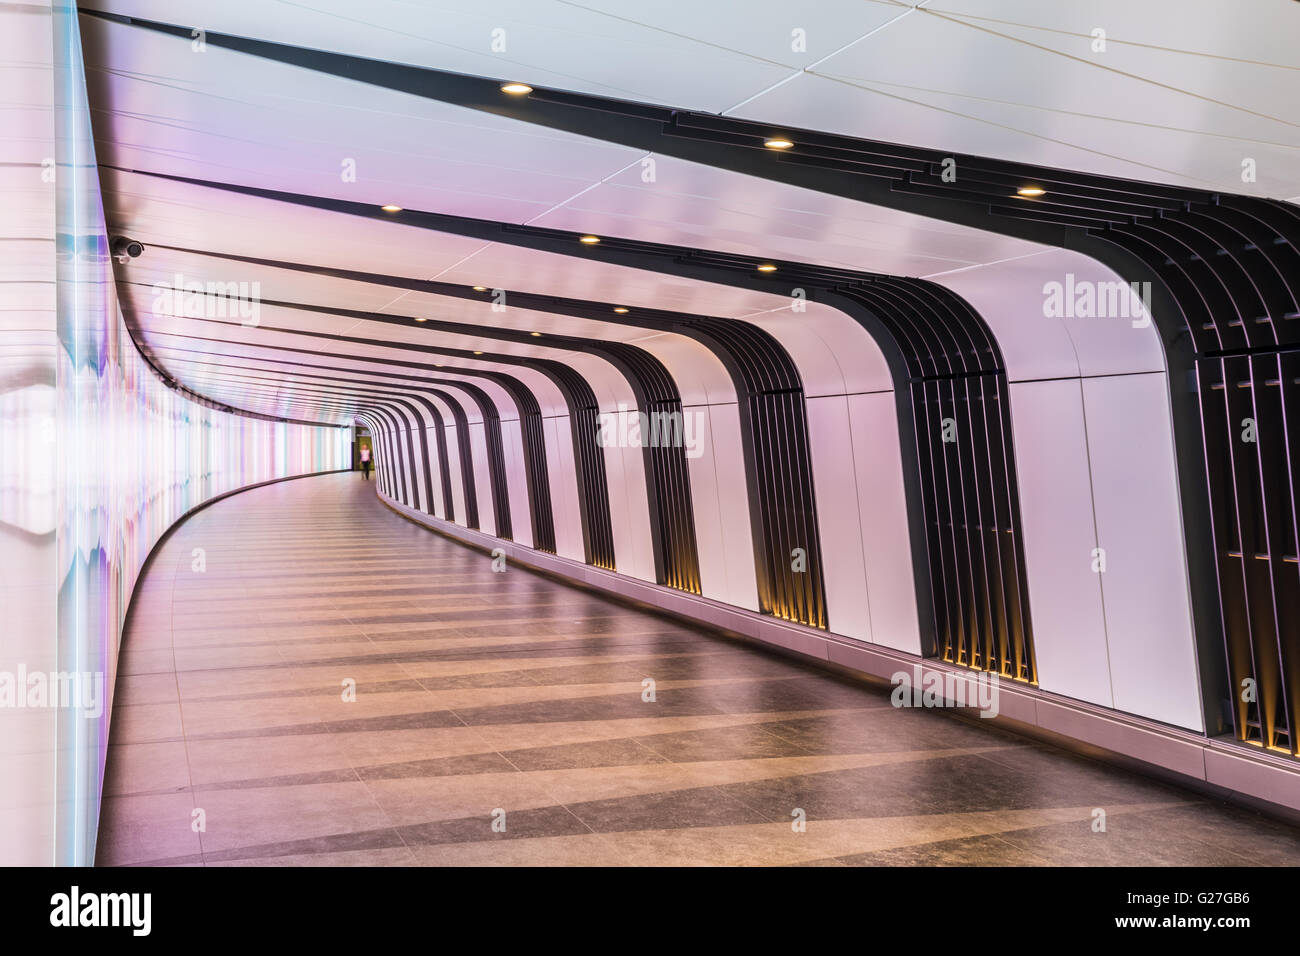 Londres, Royaume-Uni - 20 mai 2017 - King's Cross tunnel futuriste, les 90 mètres de long tunnel piéton incurvé dispose d'une LED Banque D'Images